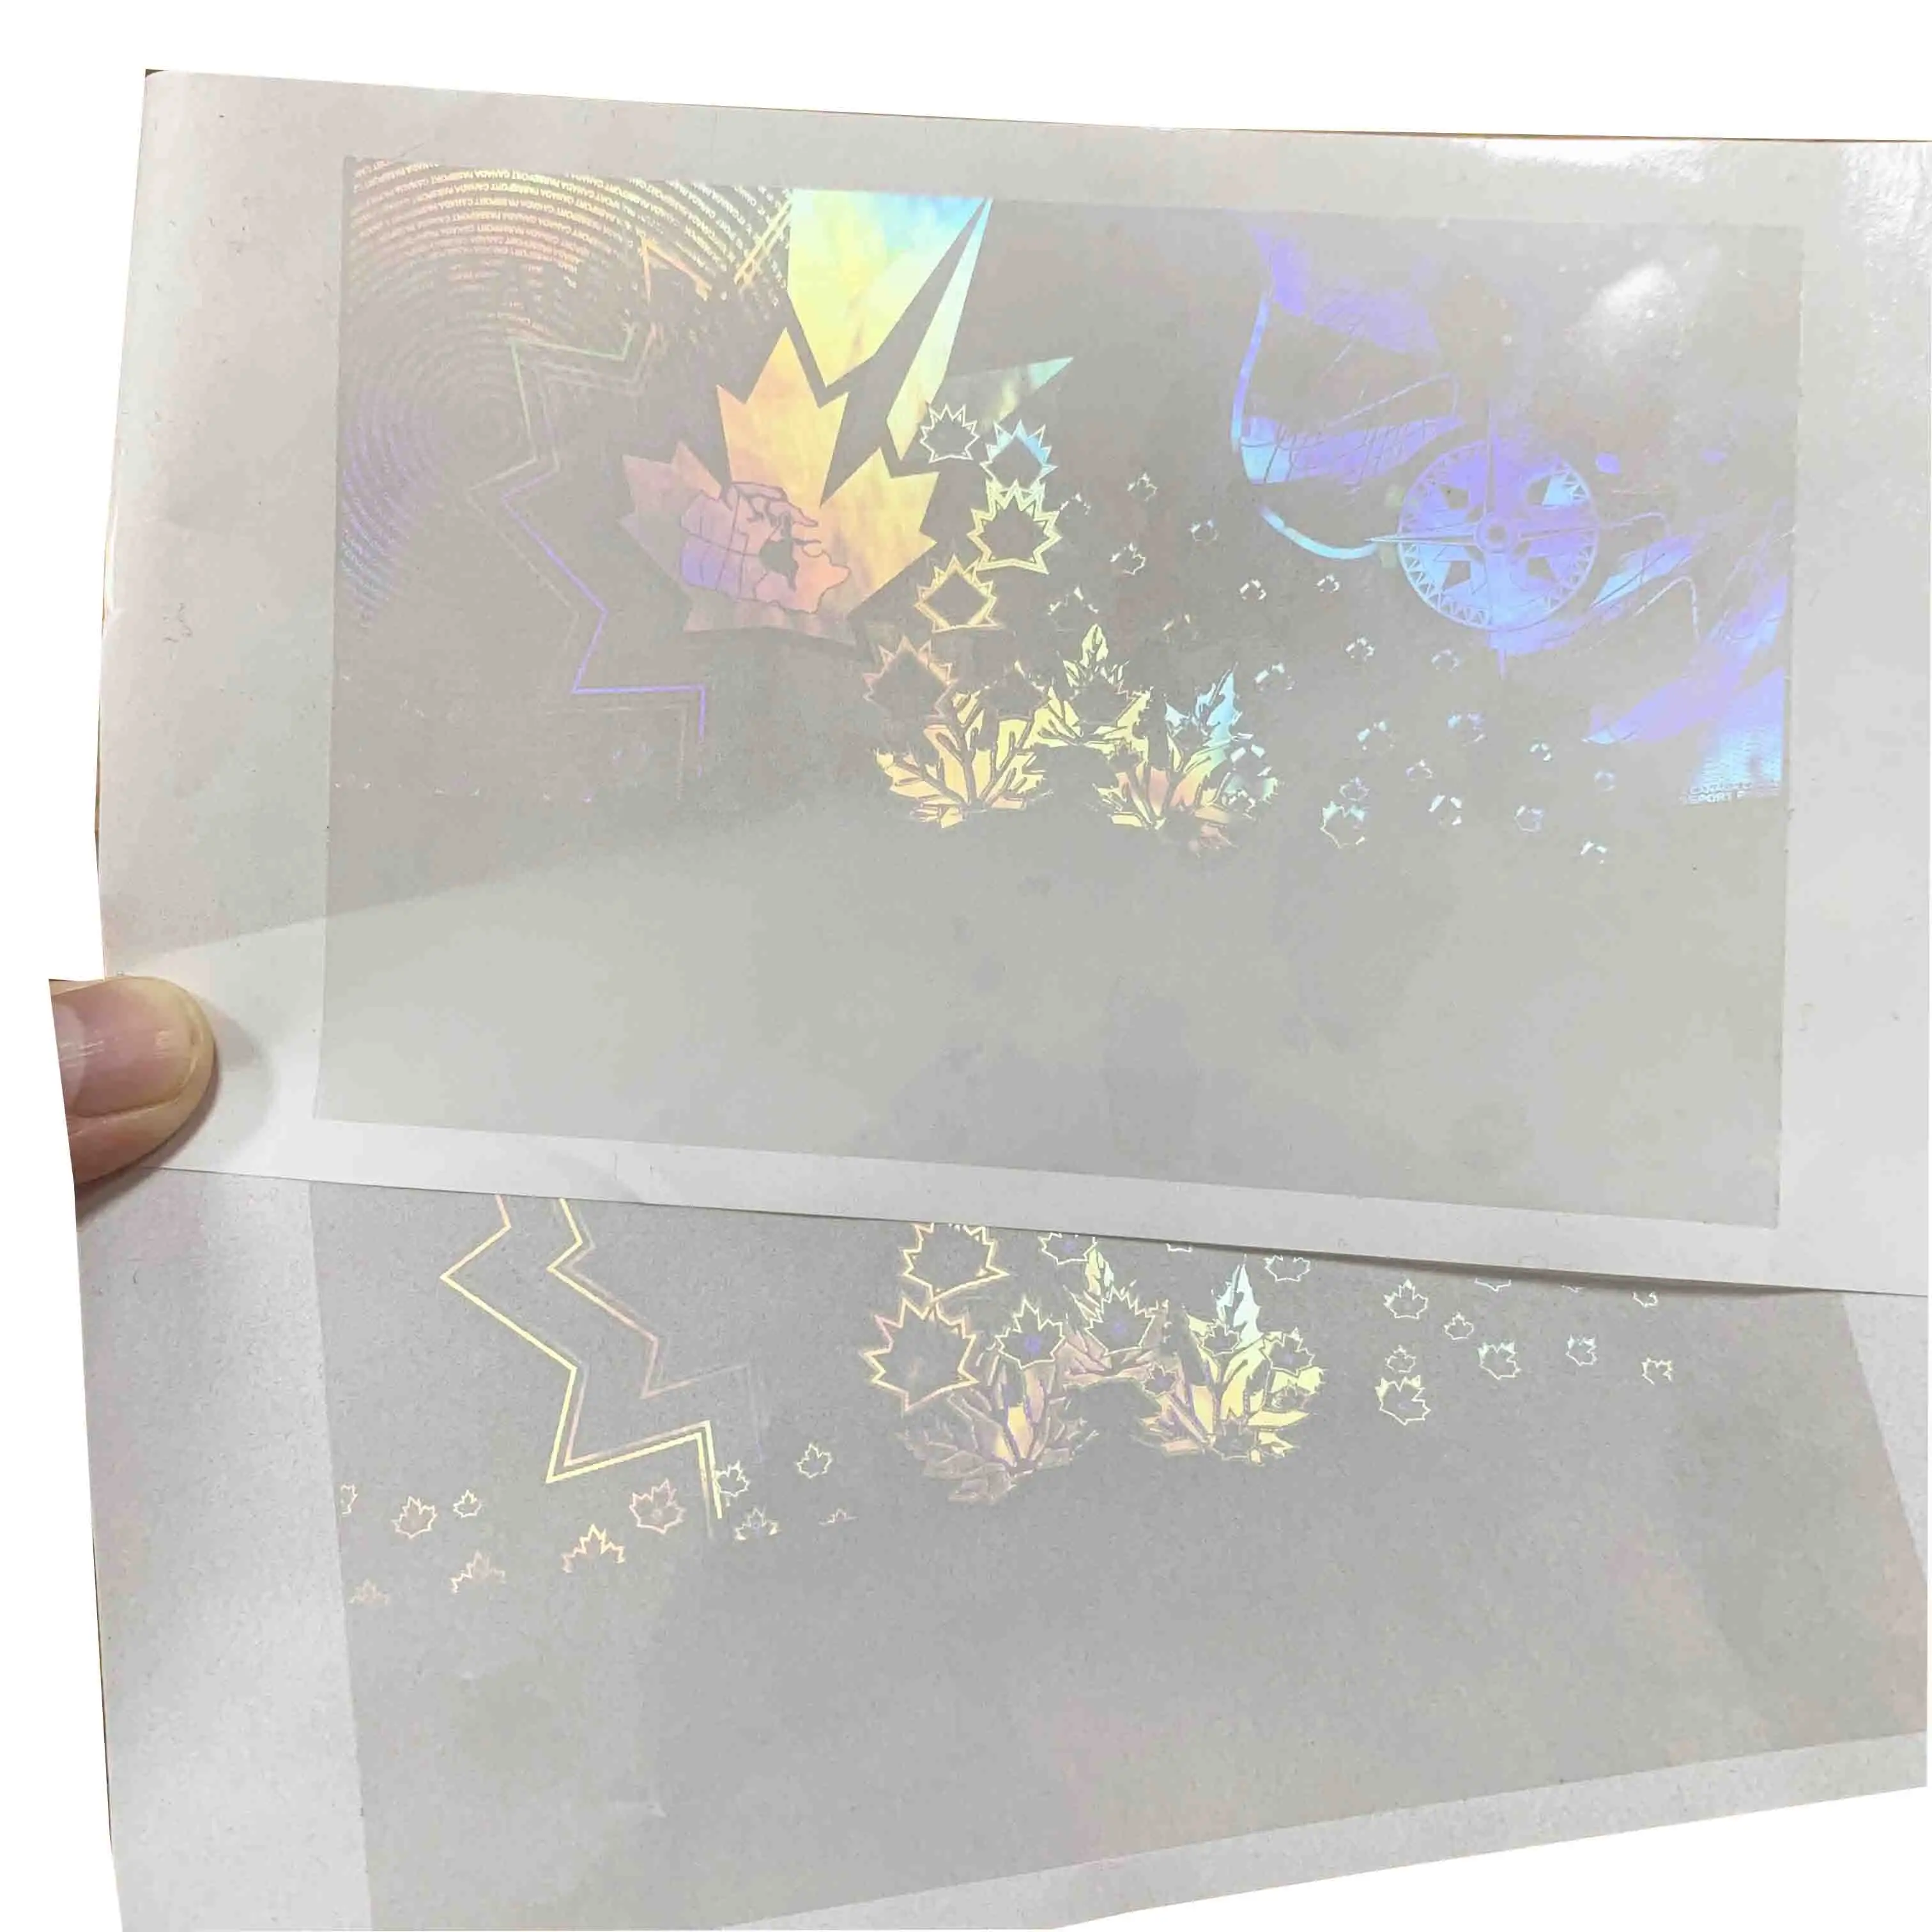 주문 열전달 투명한 박판 포일 뜨거운 각인 ID 안전 3D 오바레이 홀로그램 자필 상표 스티커 목록